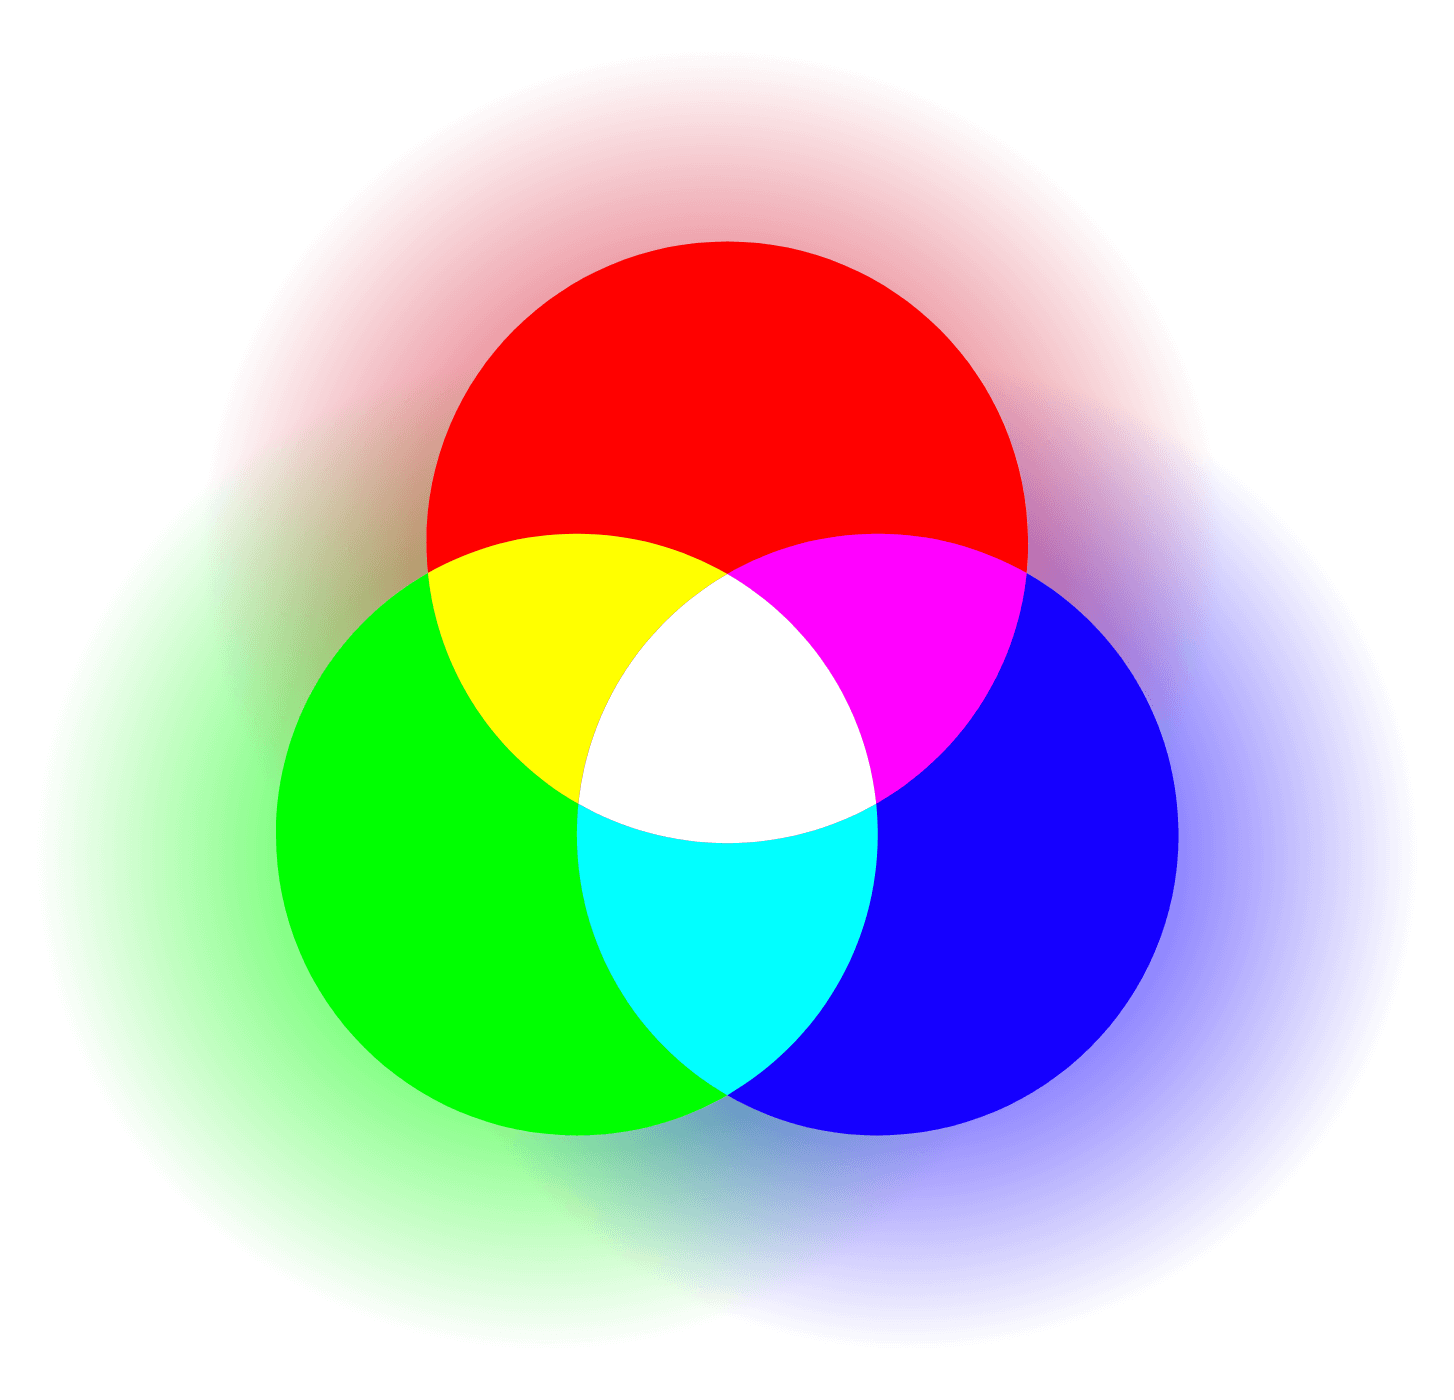 demonstrating-additive-color-model-versus-subtractive-color-model